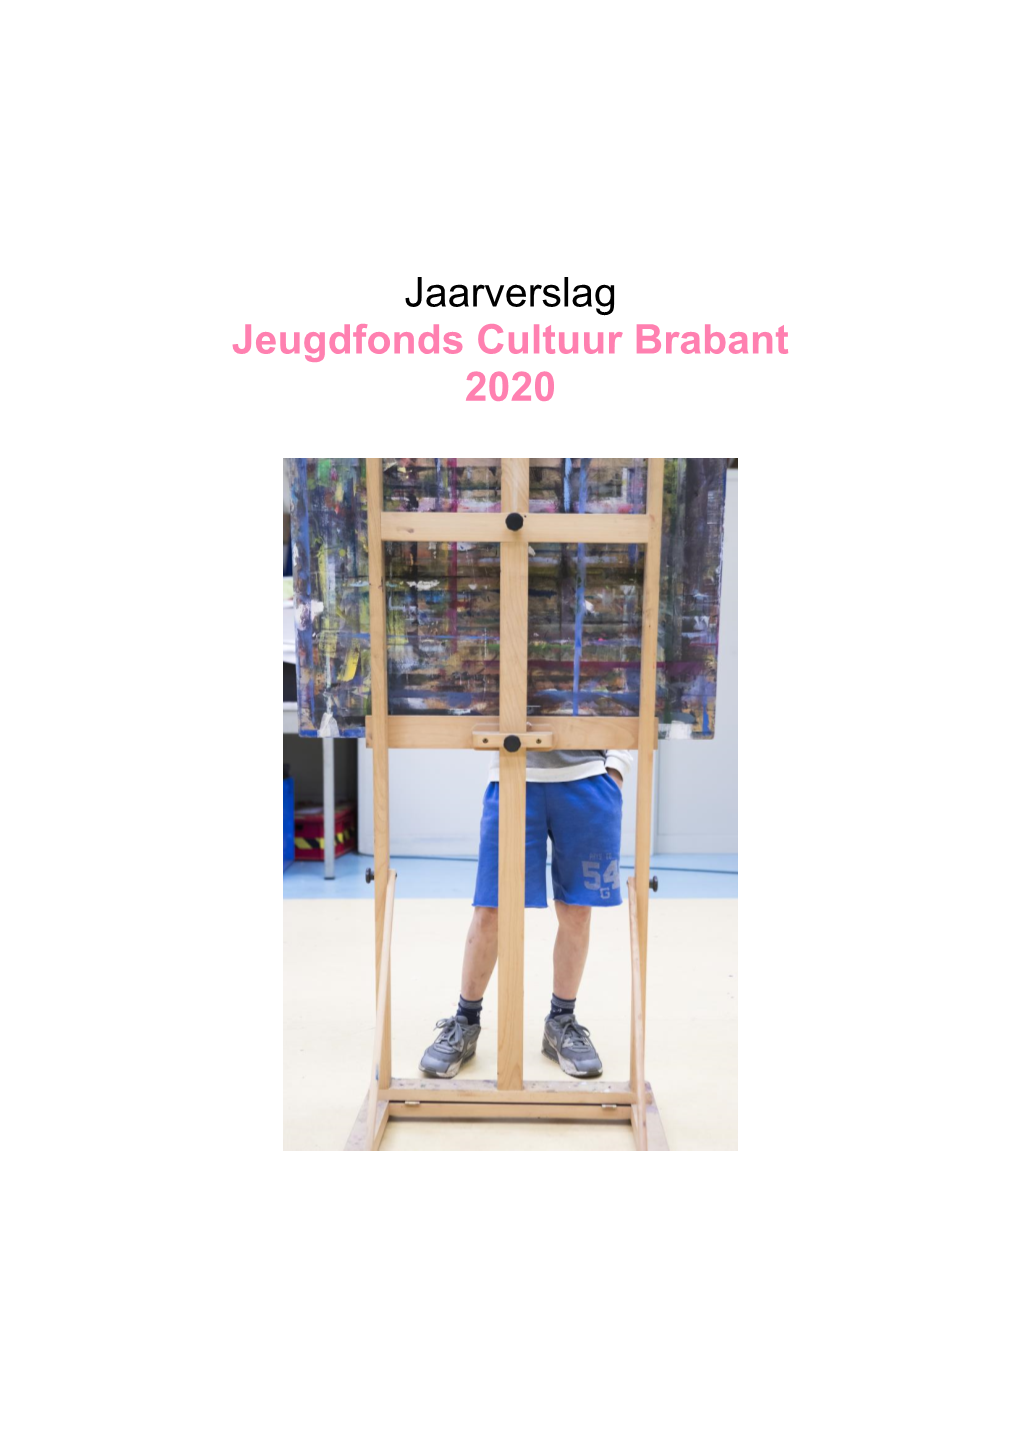 Jaarverslag Jeugdfonds Cultuur Brabant 2020